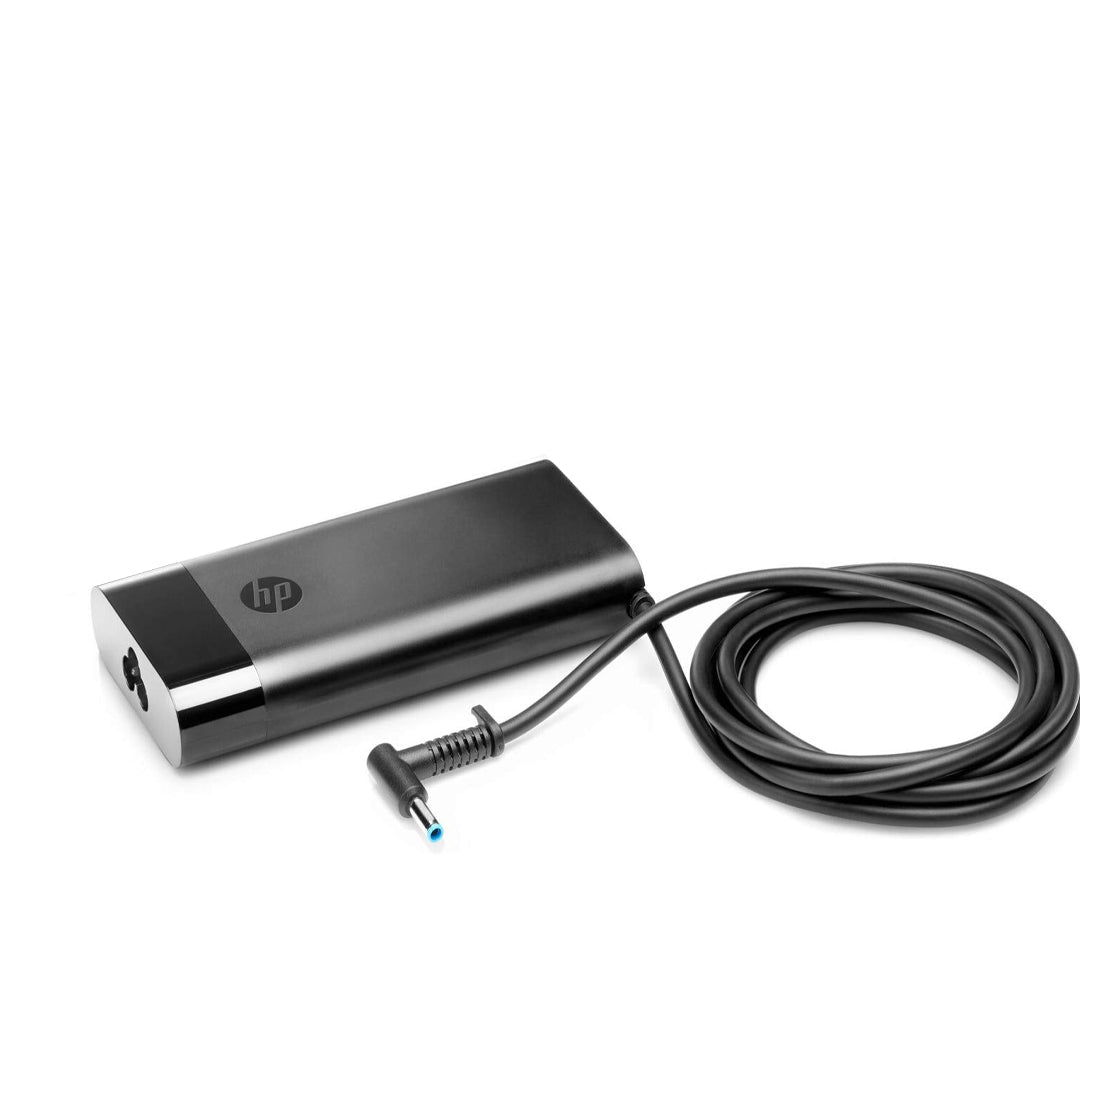 ZBook 15u G3 के लिए HP ओरिजिनल 150W 4.5mm पिन स्लिम लैपटॉप चार्जर अडैप्टर पावर कॉर्ड के साथ